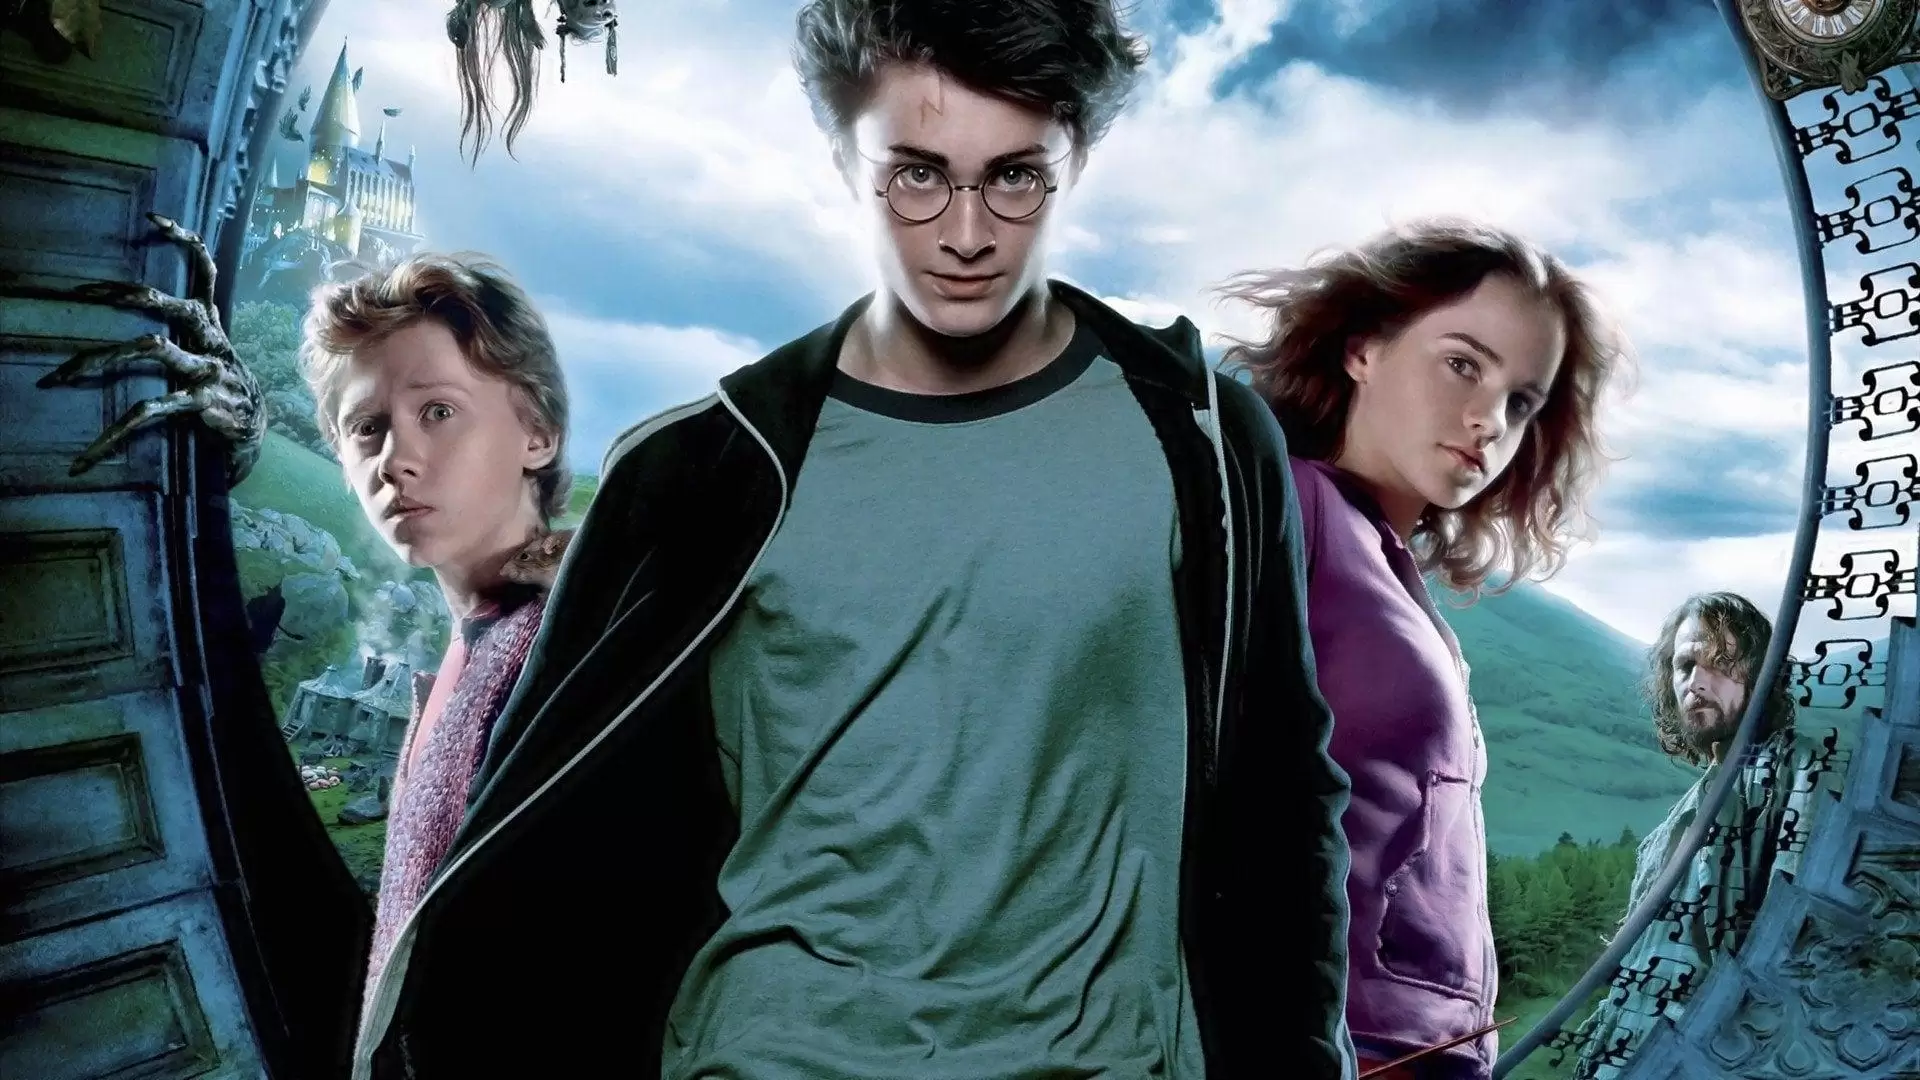 دانلود فیلم Harry Potter and the Prisoner of Azkaban 2004 (هری پاتر و زندانی آزکابان) با زیرنویس فارسی و تماشای آنلاین